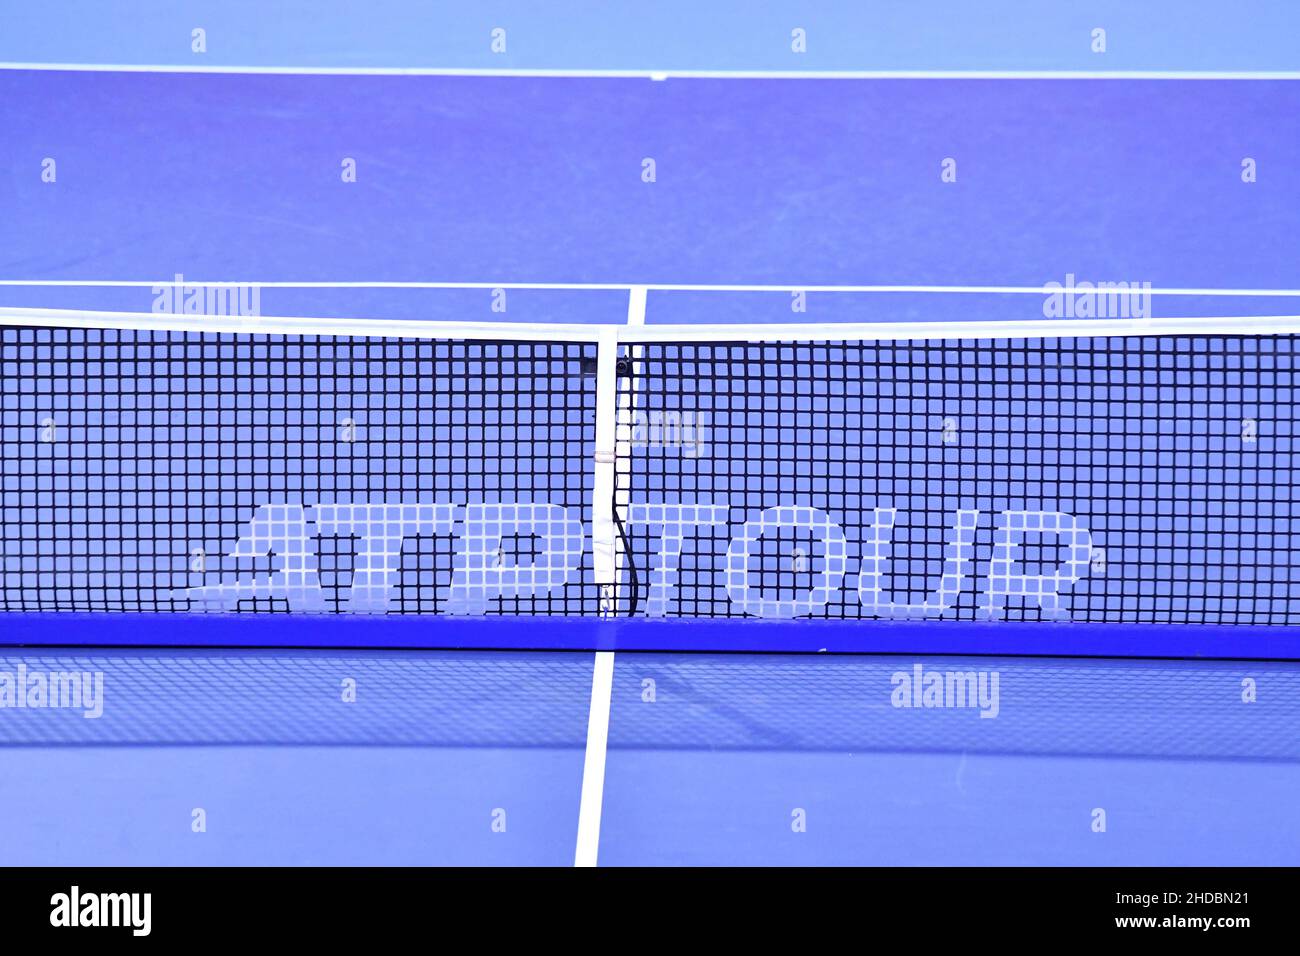 Tennis net sobre superficie azul La próxima generación de finales ATP, en Milán. Foto de stock